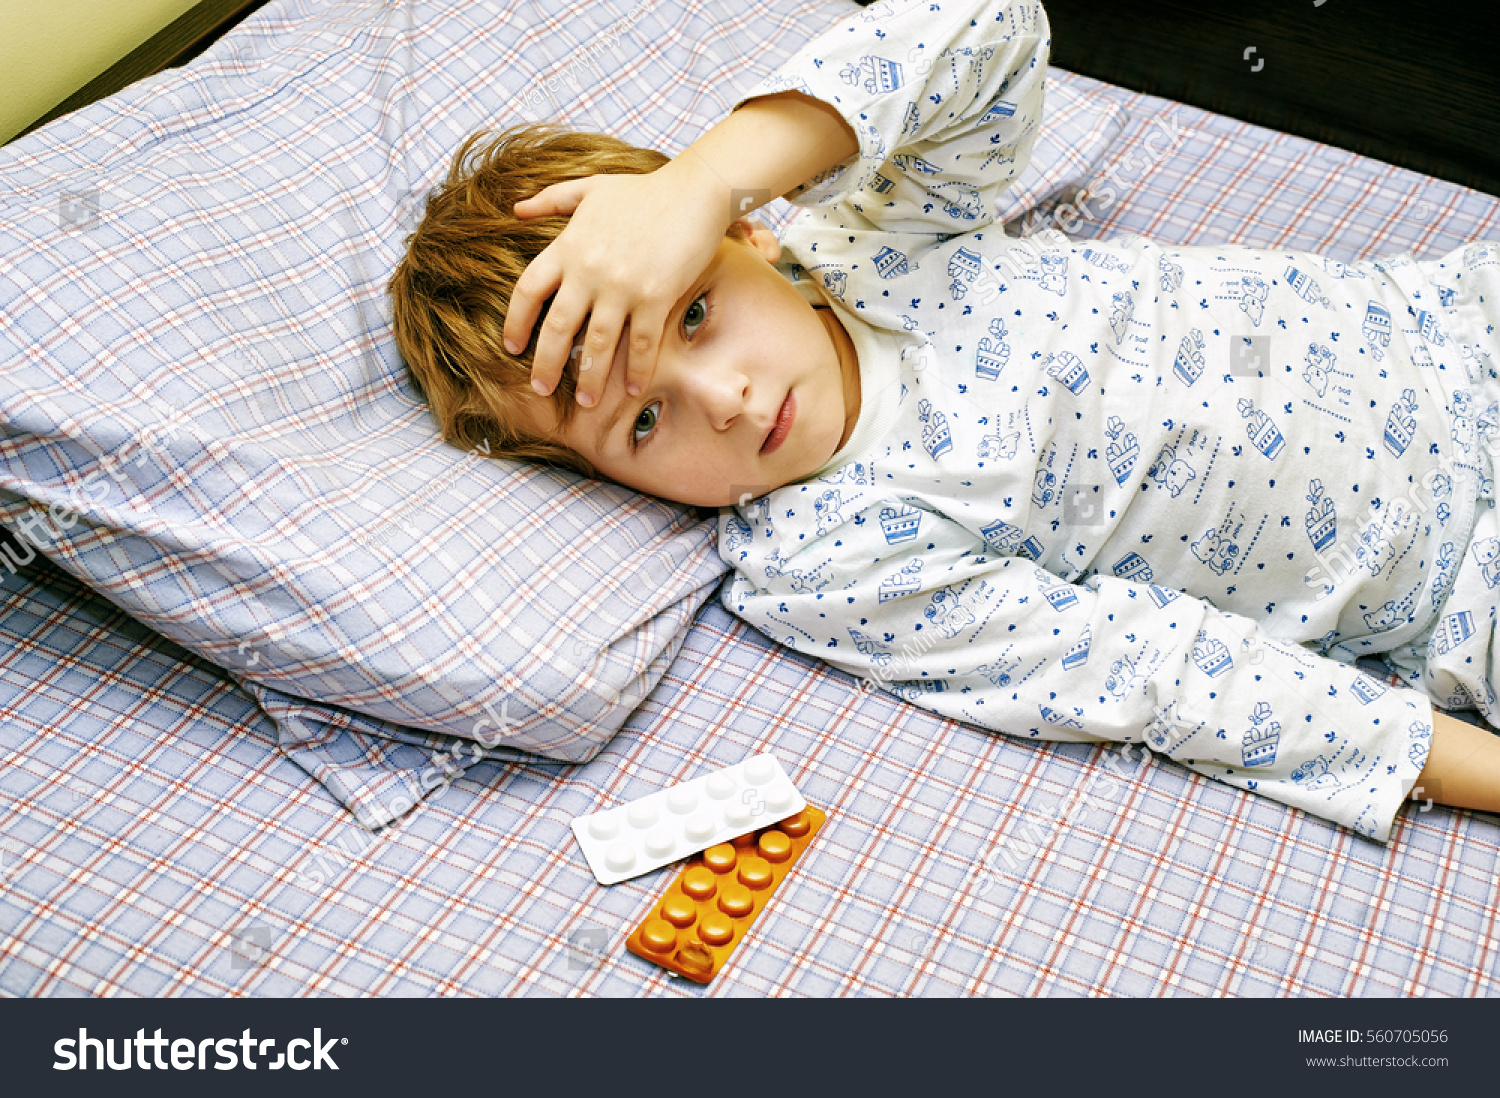 Мальчик лежит на кровати